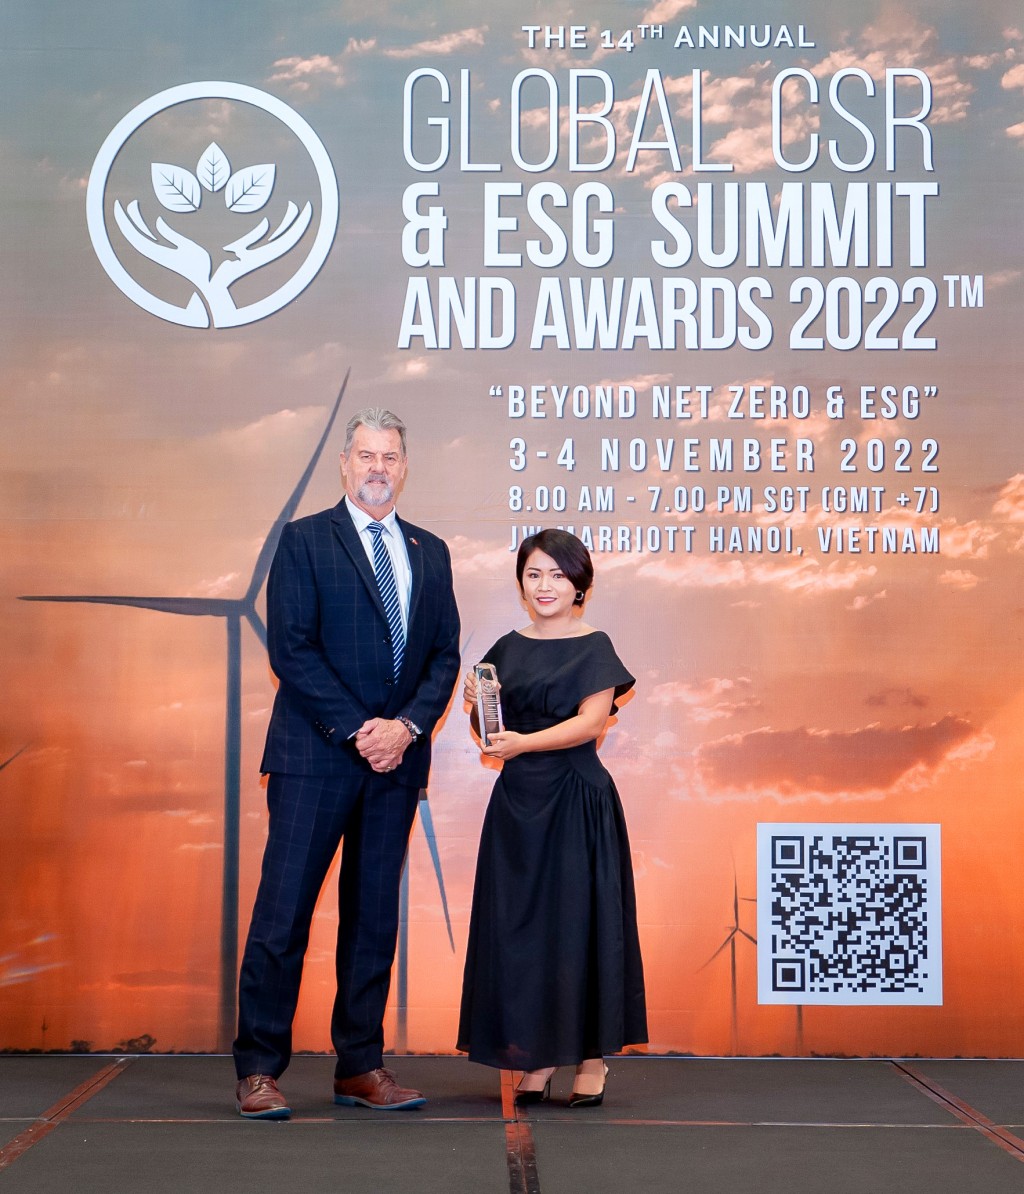 Bà Phạm Thị Bích Liên - Trưởng phòng Vận hành tiếp thị và Phát triển bền vững Home Credit Việt Nam - đại diện nhận giải “CSR & ESG Leadership Award 2022”.